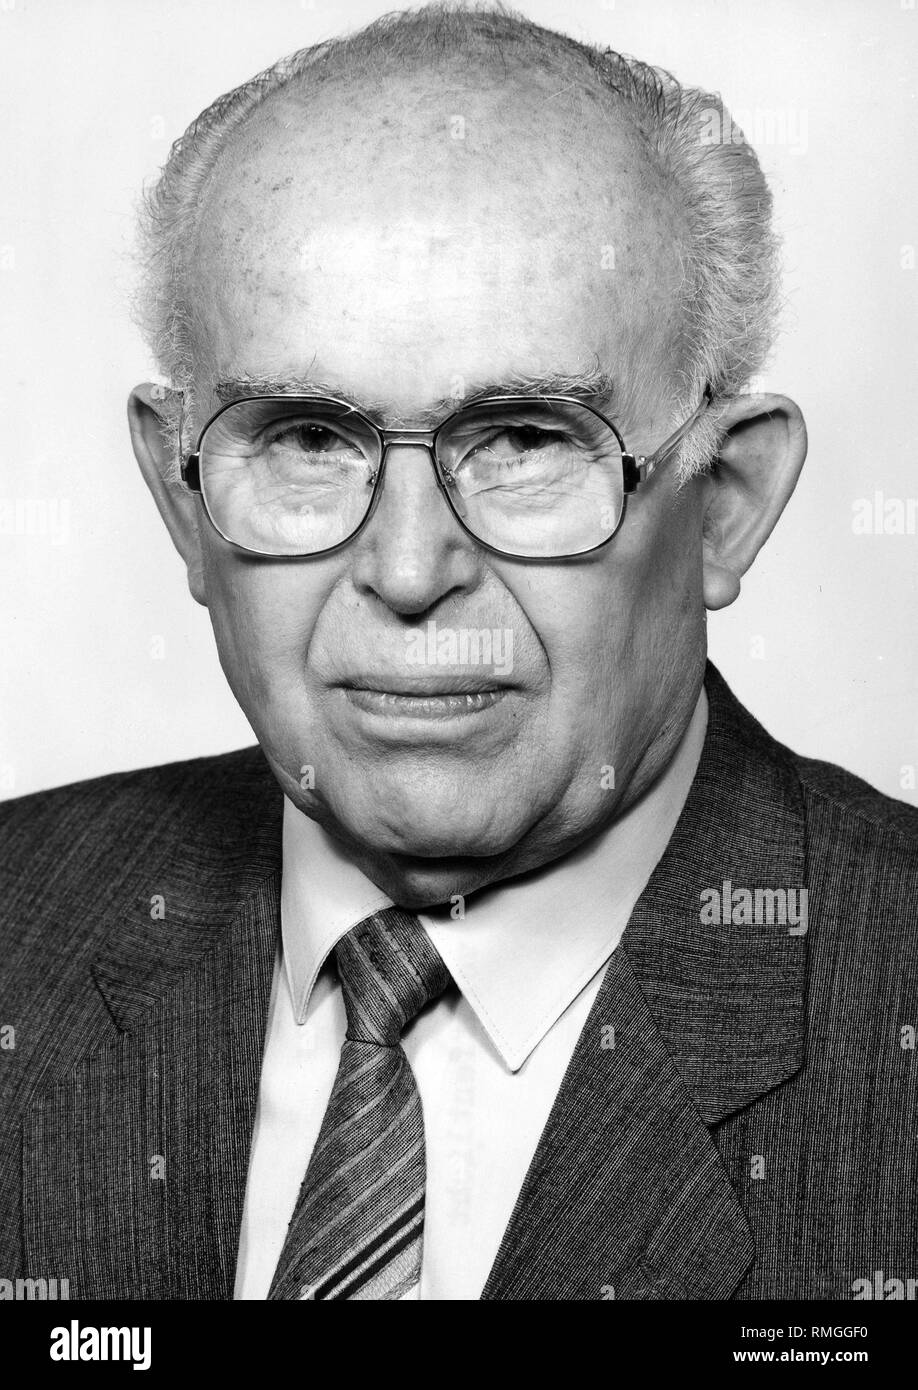 Erich Mueckenberger 08.06.1910 - 10.02.1998 - (1958) - im Jahr 1989 war ein Mitglied des SED-Politbüros, zwischen 1950 - 1989 Mitglied des ZK der SED, von 1953 - 1960 Sekretär für Landwirtschaft des Zentralkomitees, die zwischen 1961 - 1971 Erster Sekretär der SED Bezirk Frankfurt, zwischen 1971 - 1989 Vorsitzender der Partei der Ausschuss. Stockfoto